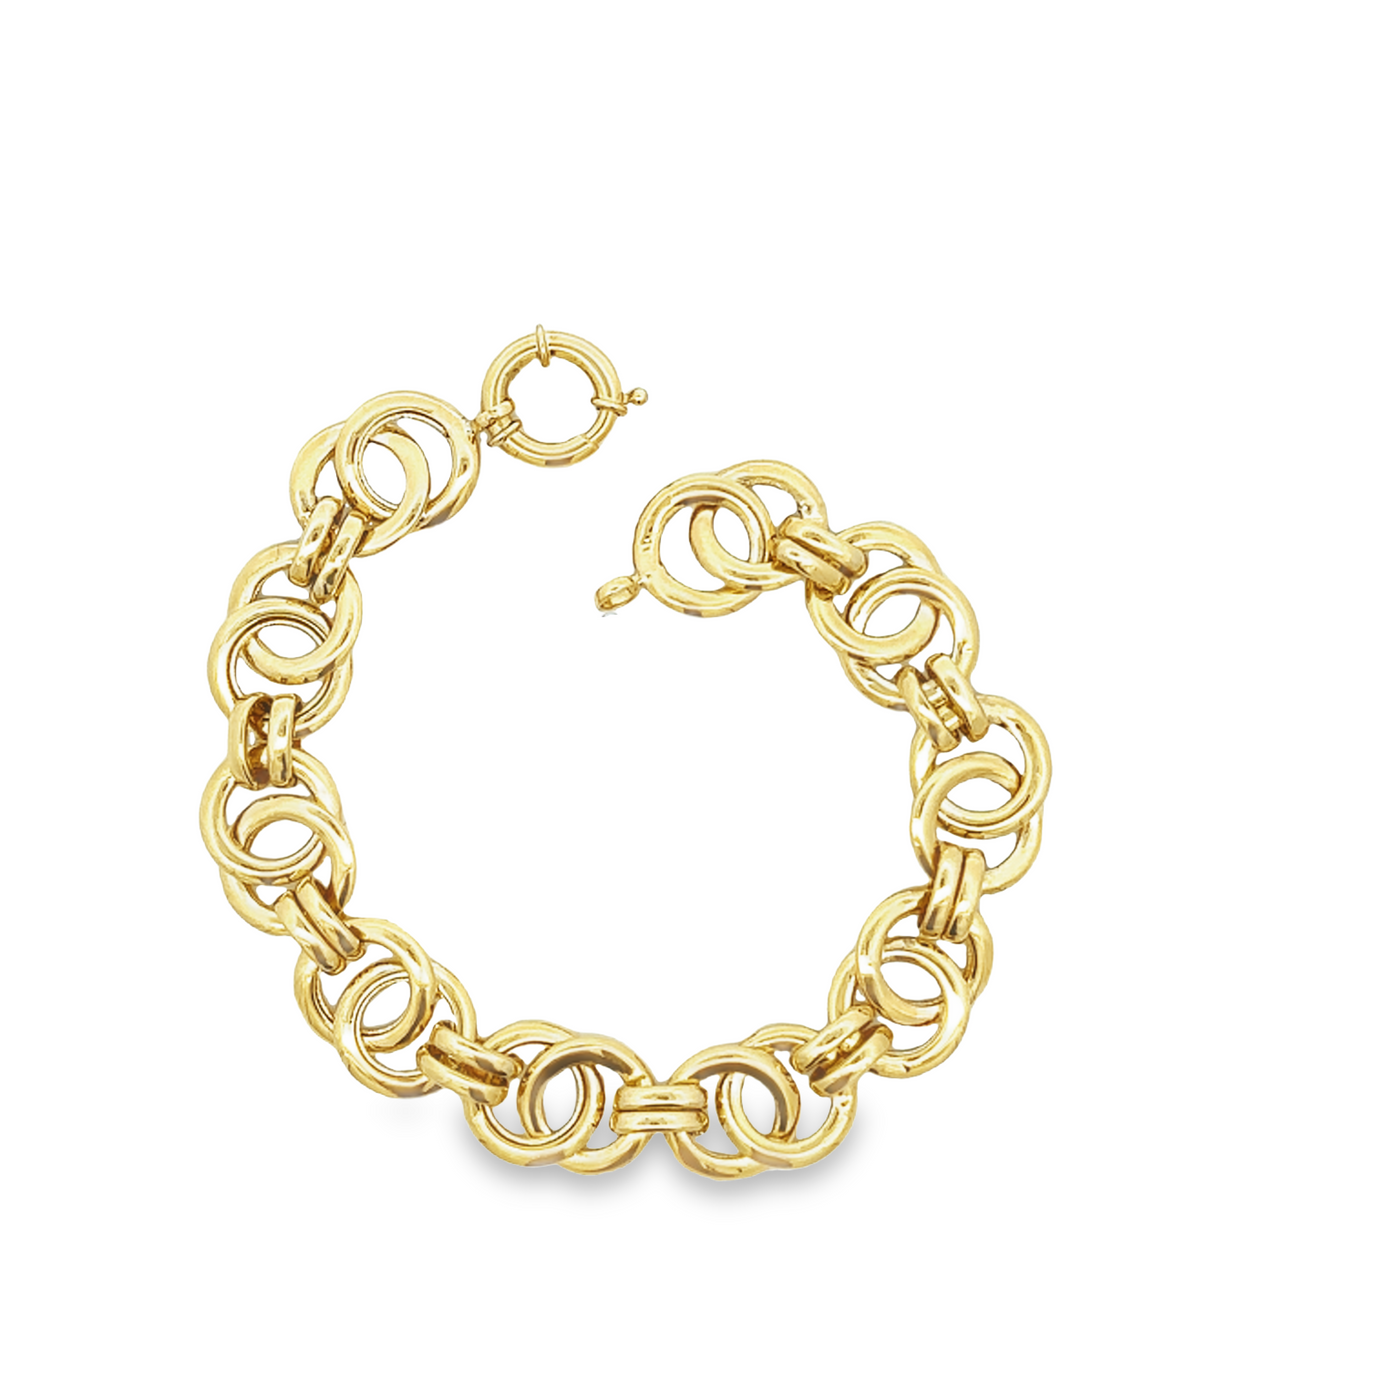 10 Karat Yellow Gold Circle Link Bracelet